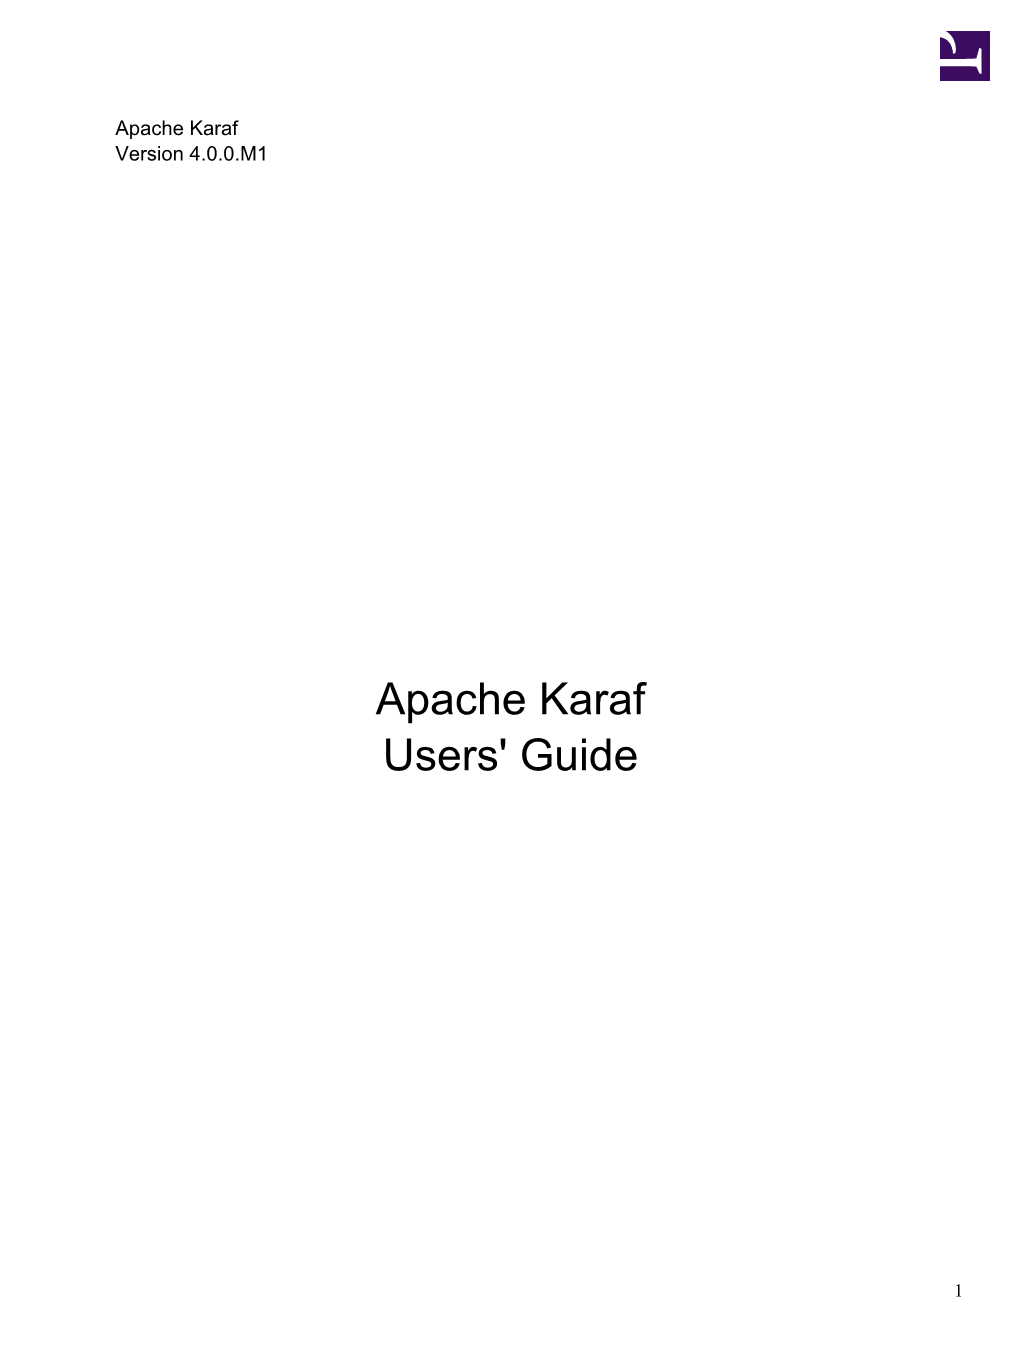 Apache Karaf 4.0.0.M1 Guides